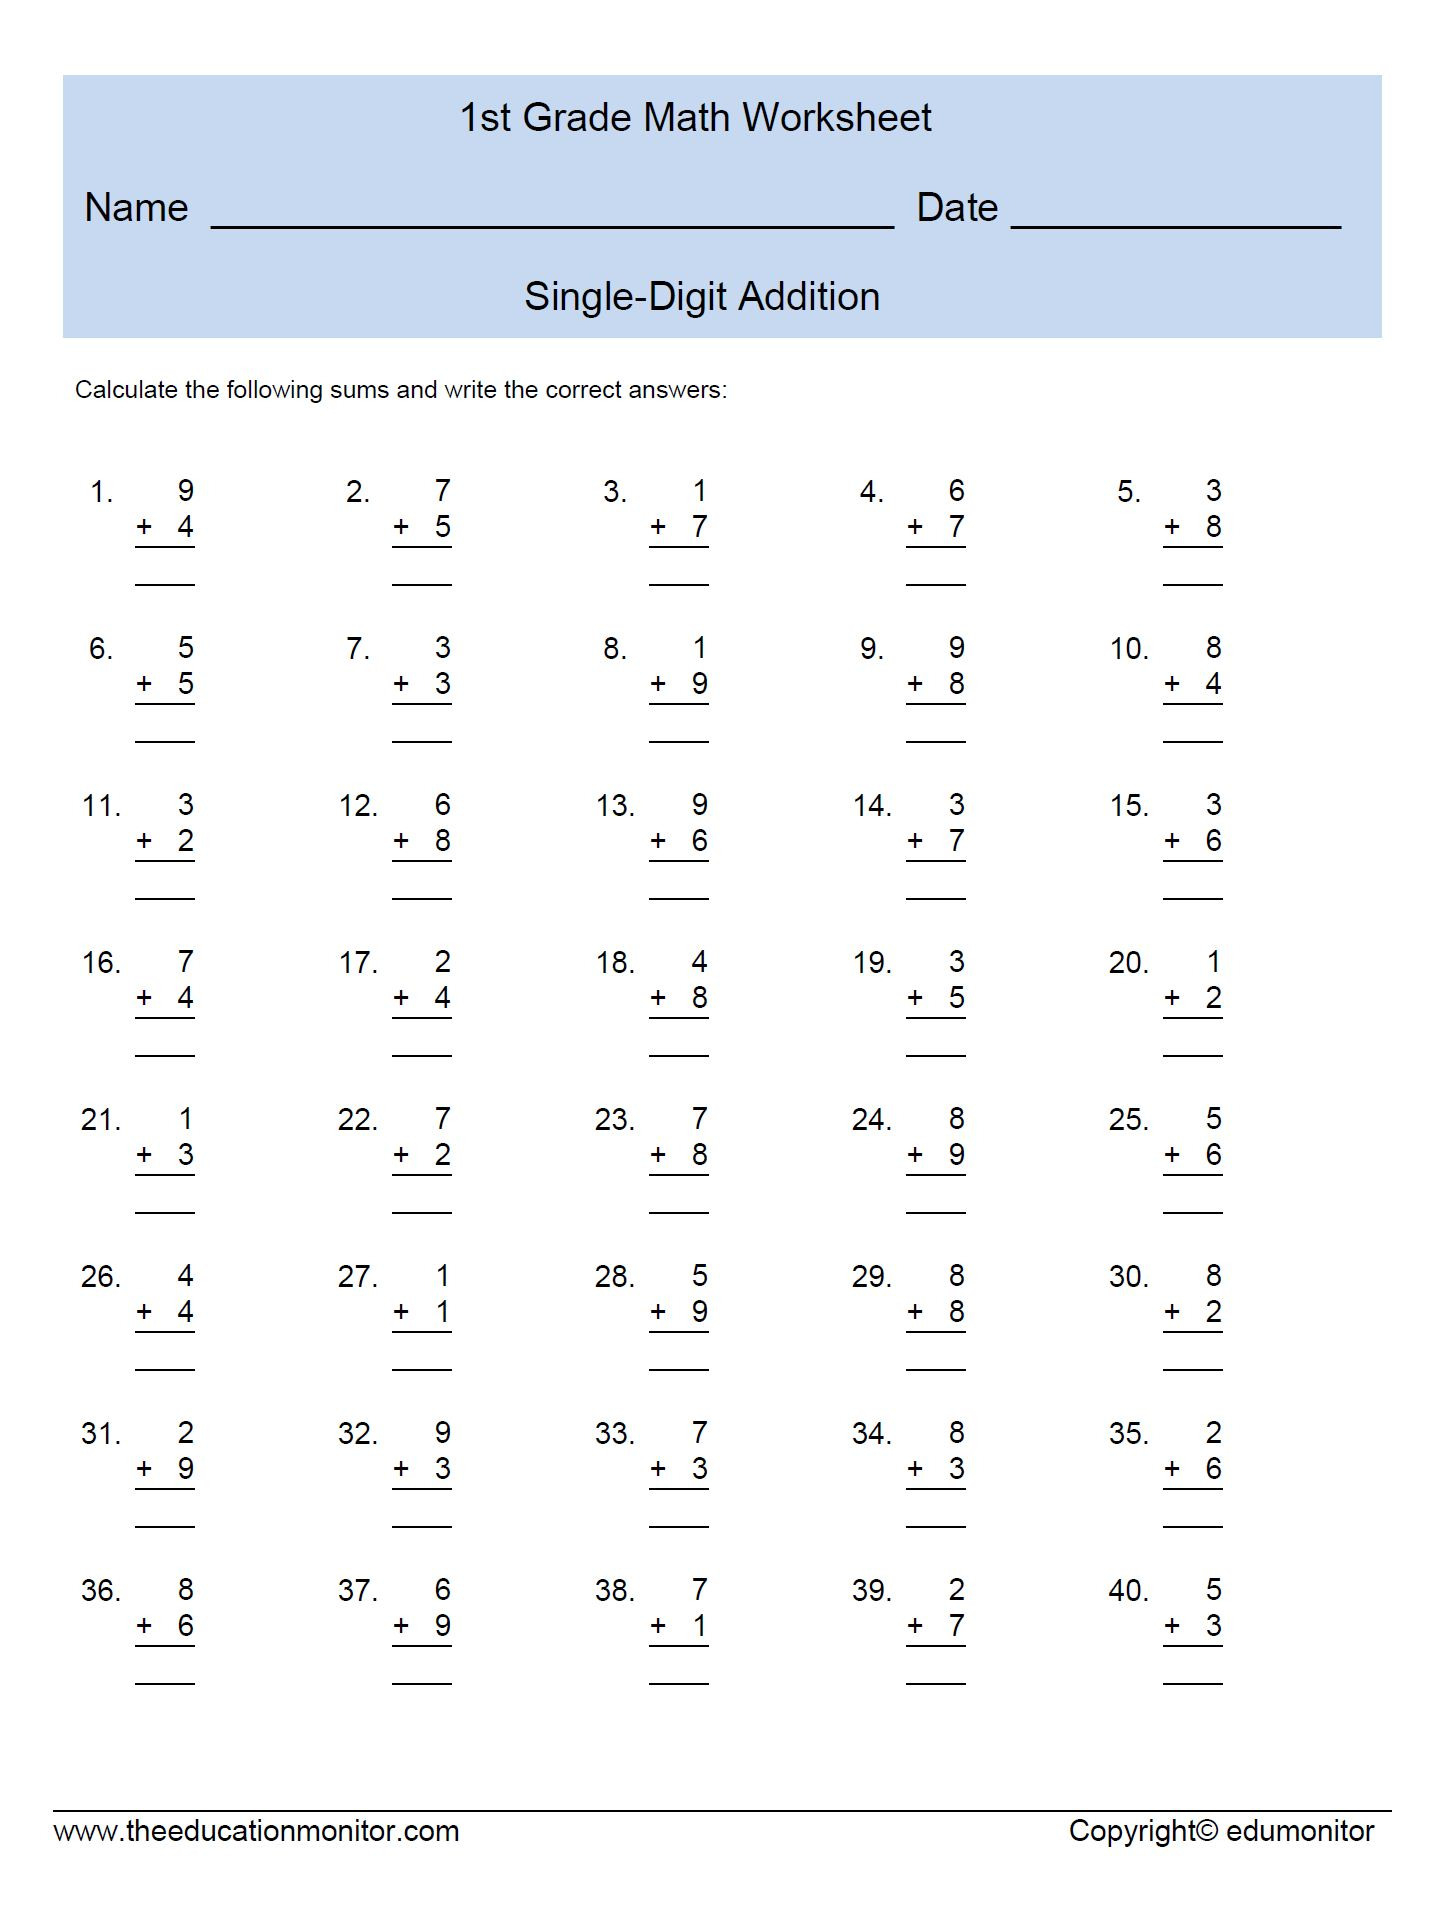 Single Digit Addition Worksheets For Ft Grade